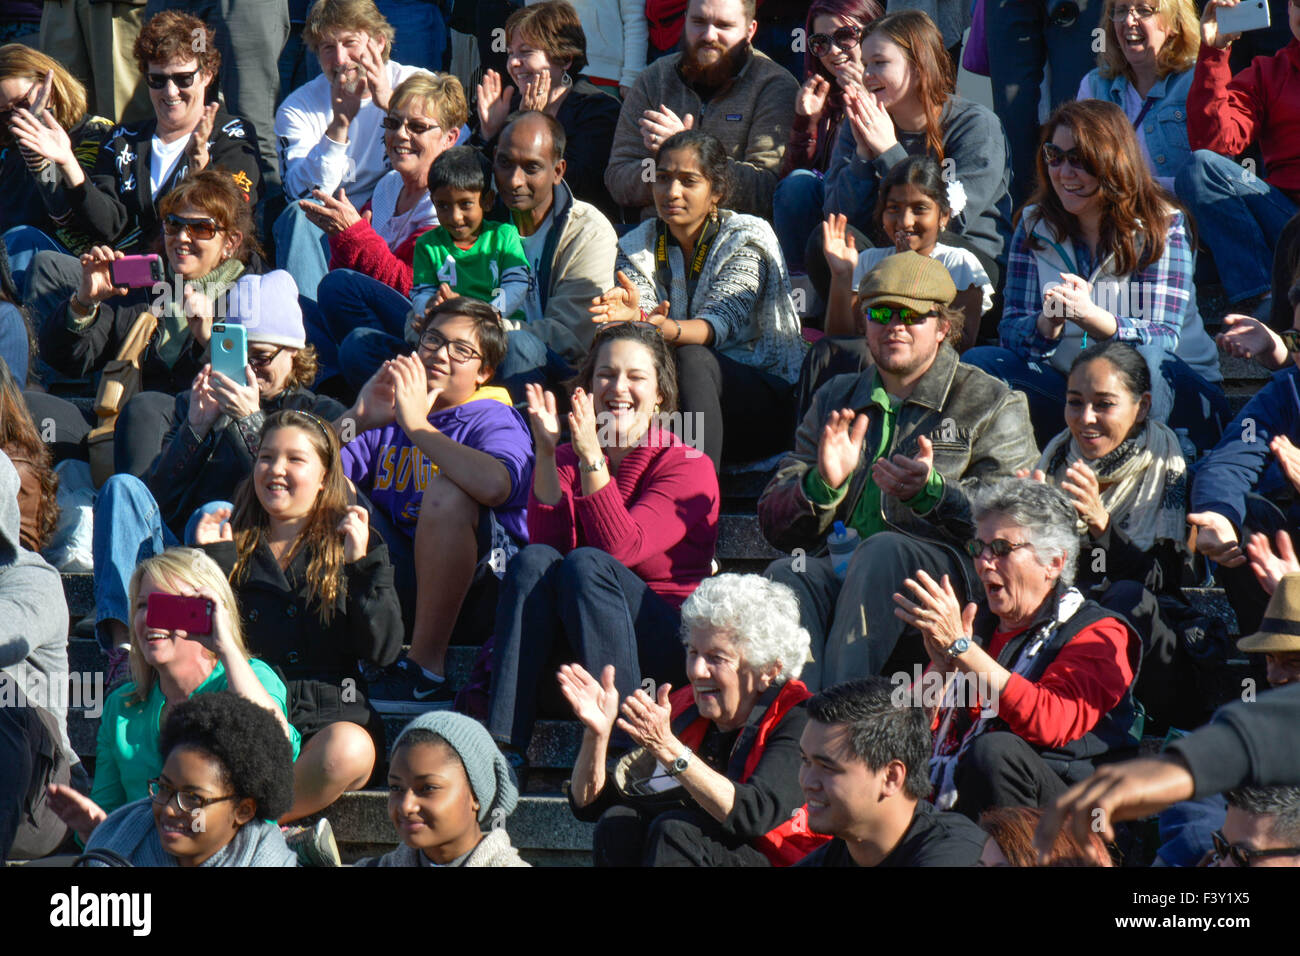 Eine Menge von ethnisch gemischten Menschen in den USA sitzen zusammen auf der Tribüne, lachen, applaudieren & beim Ansehen eines Ereignisses zu reagieren Stockfoto